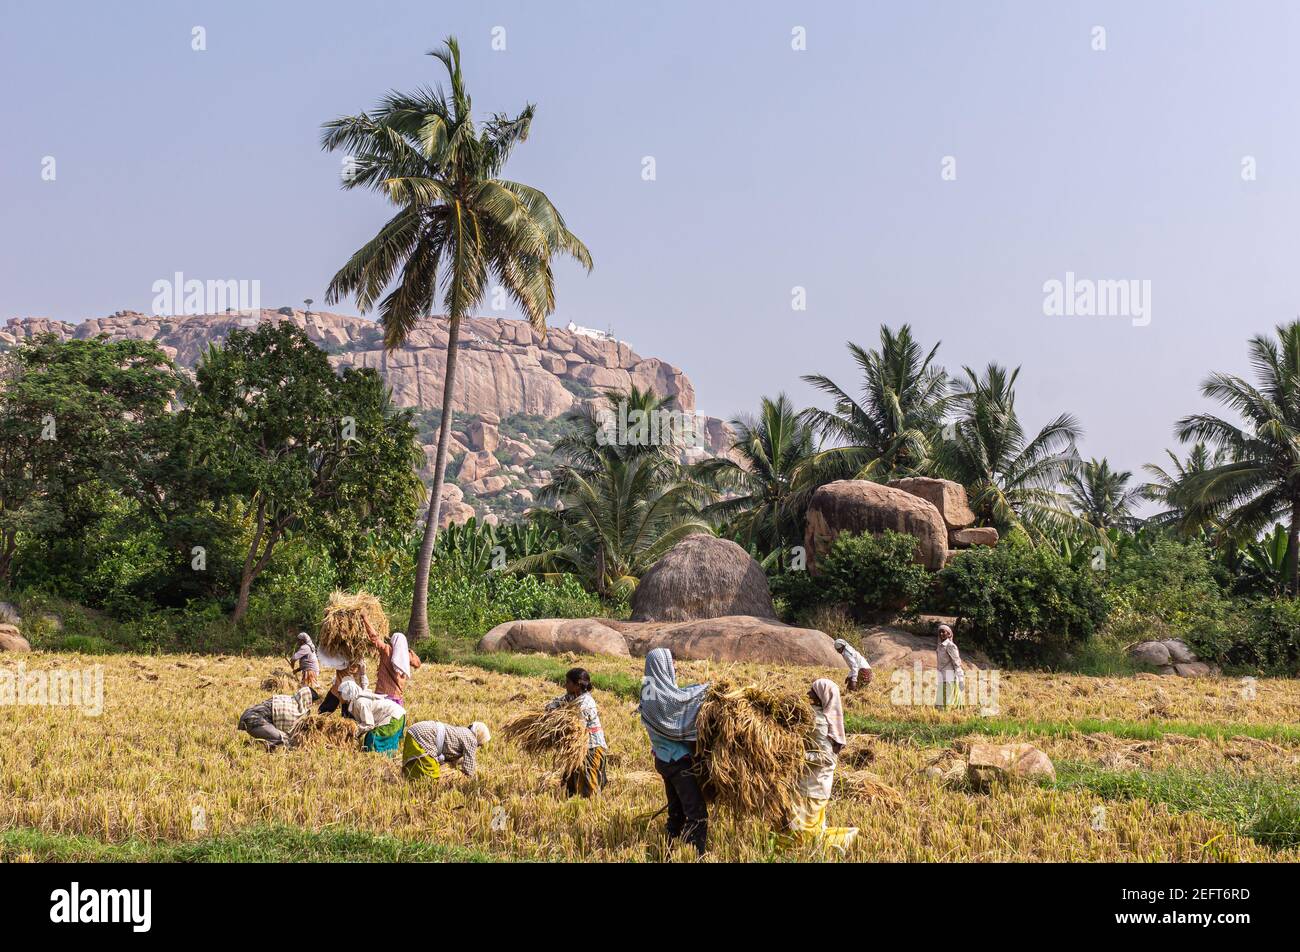 Hunumanahalli, Karnataka, India - 9 de noviembre de 2013: Ya que las parcelas son demasiado pequeñas, grupo de personas se bate paja de arroz en el paisaje con árboles verdes y beige Foto de stock